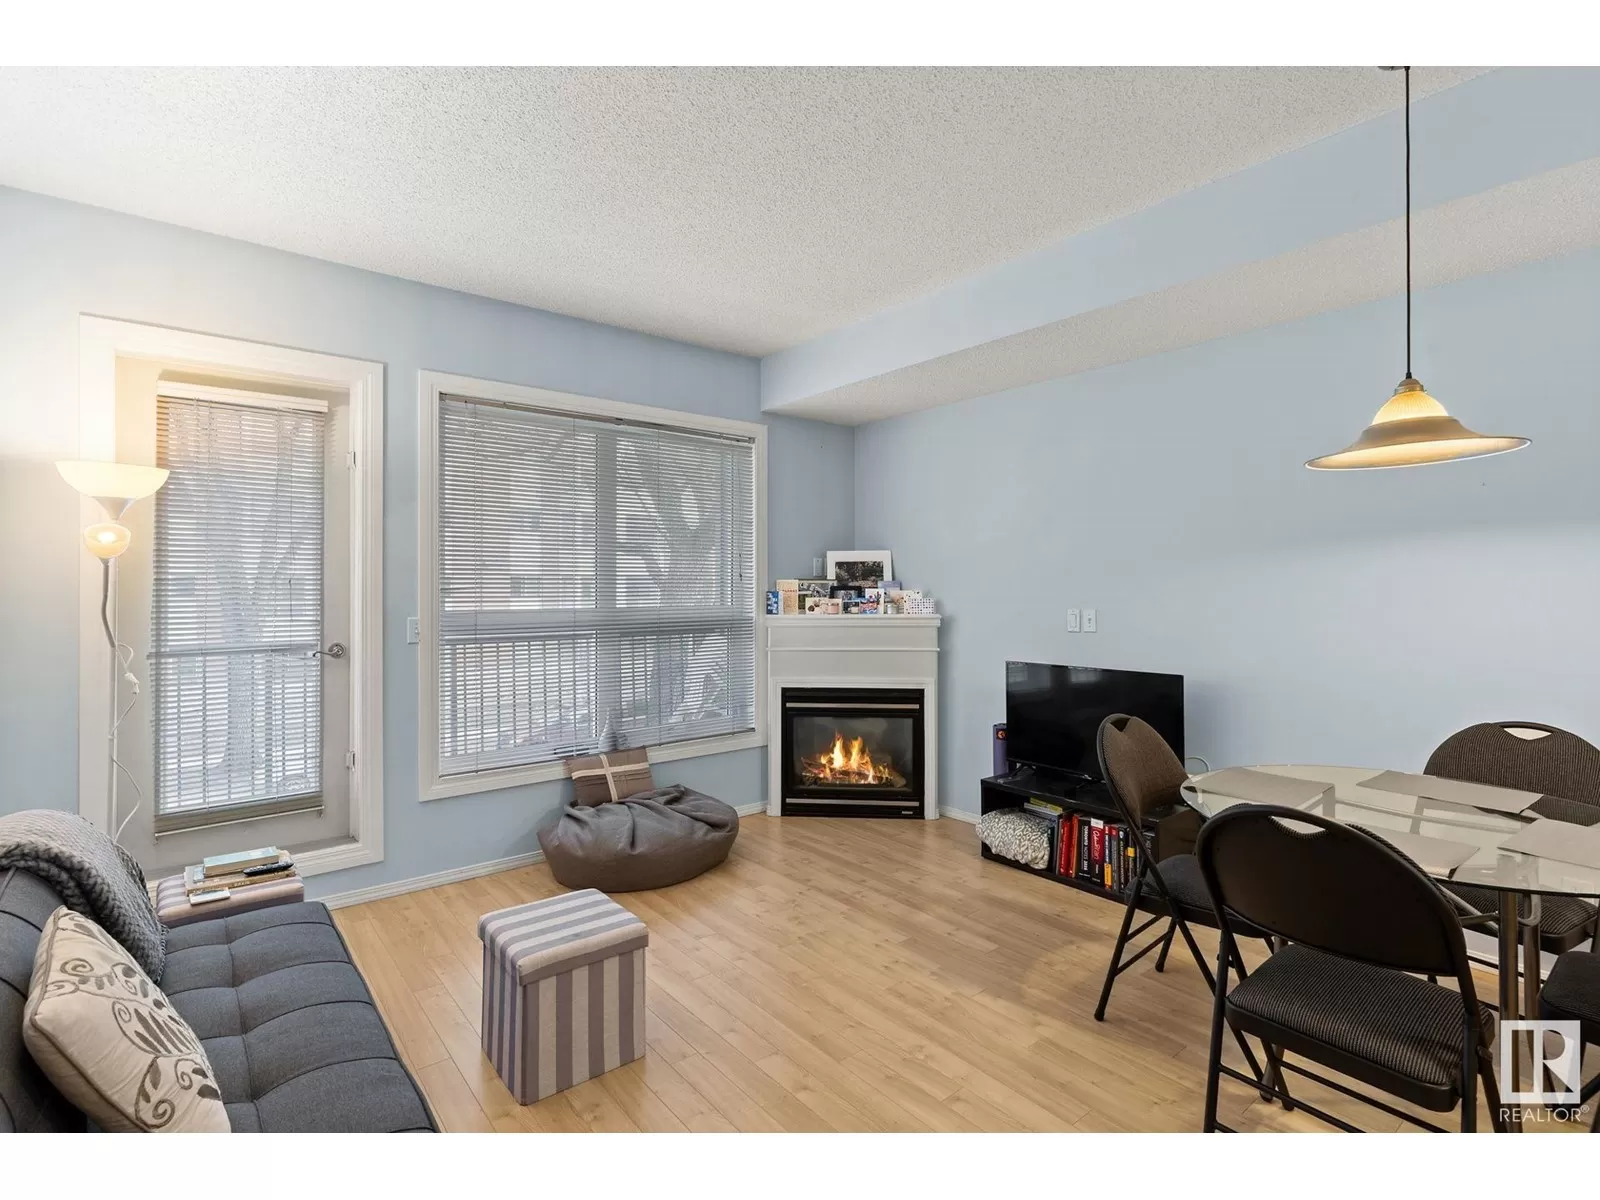 Apartment for rent: 202 11109 84 Av Nw, Edmonton, Alberta T6G 2W4